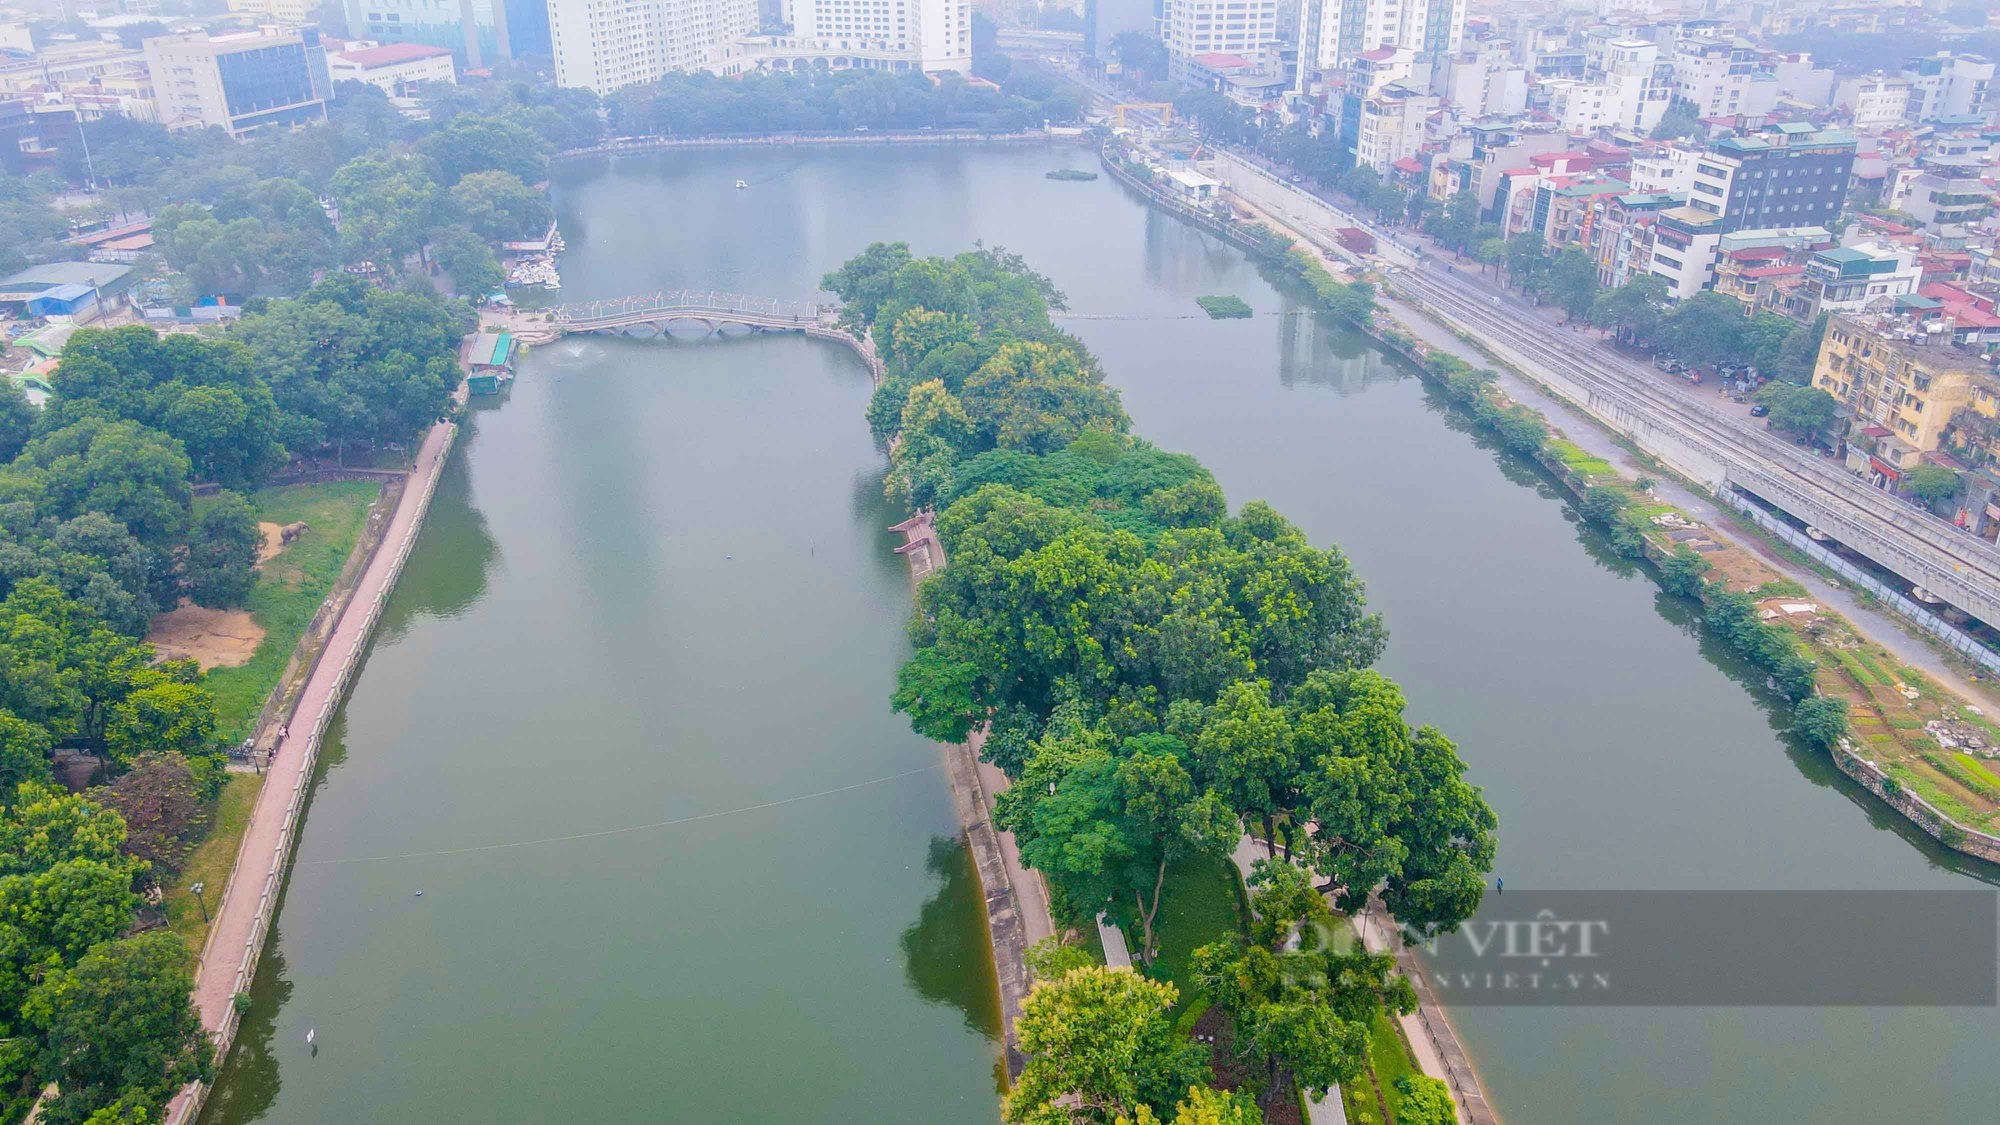 Hiện trạng xuống cấp của 3 công viên lớn nhất tại Hà Nội  - Ảnh 11.